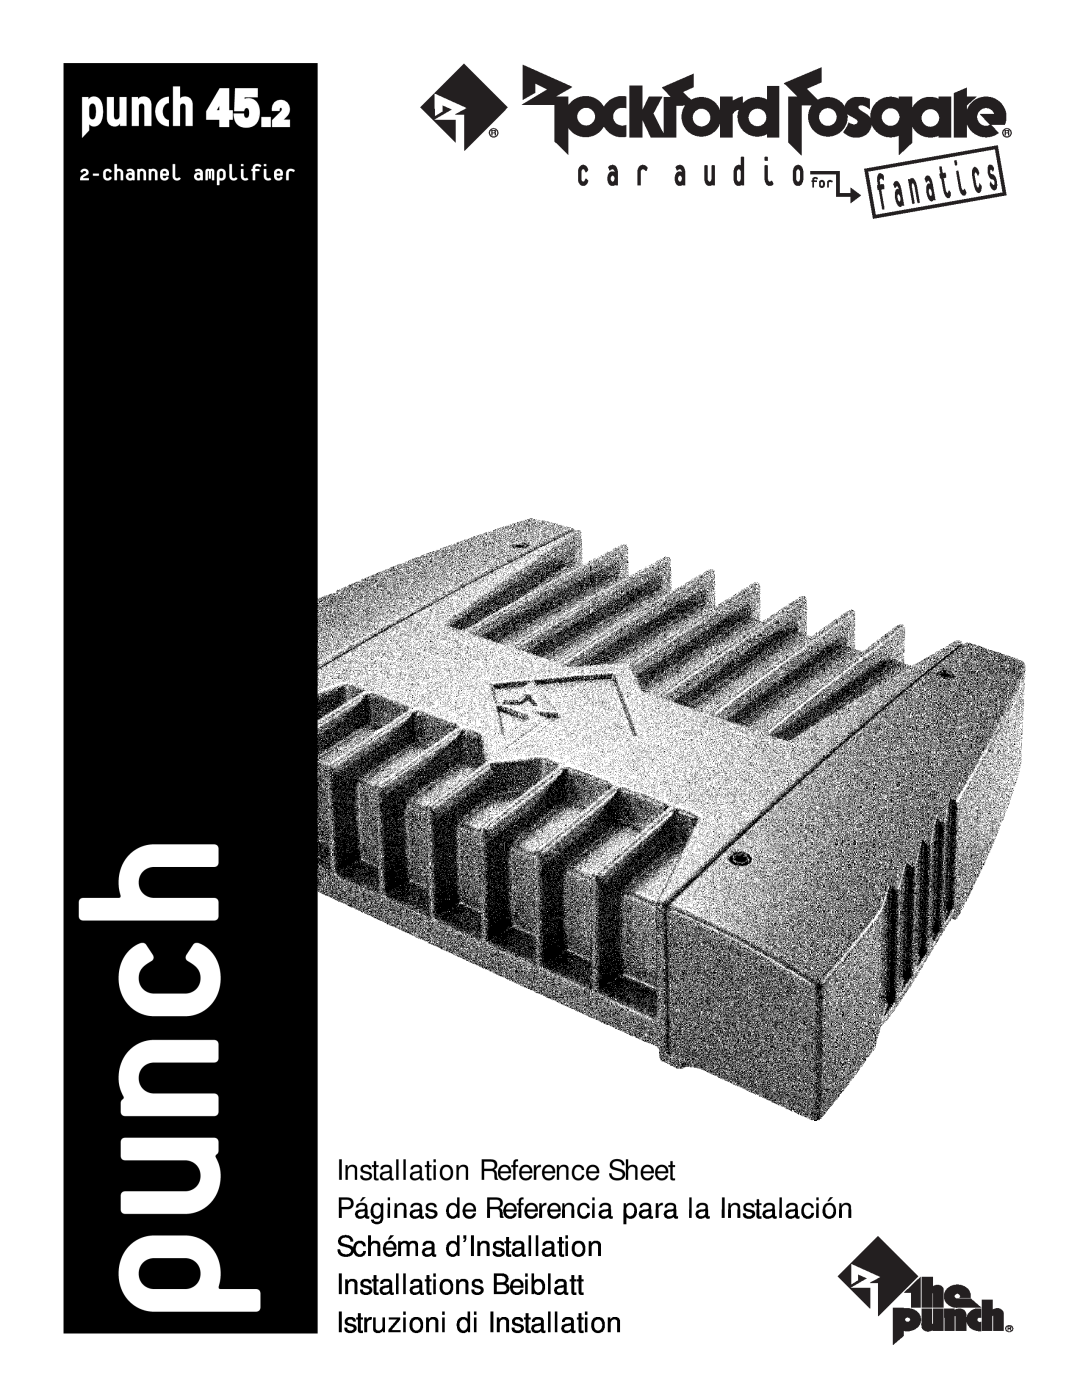 Rockford Fosgate 45.2 manual punch, Installation Reference Sheet, Páginas de Referencia para la Instalación 